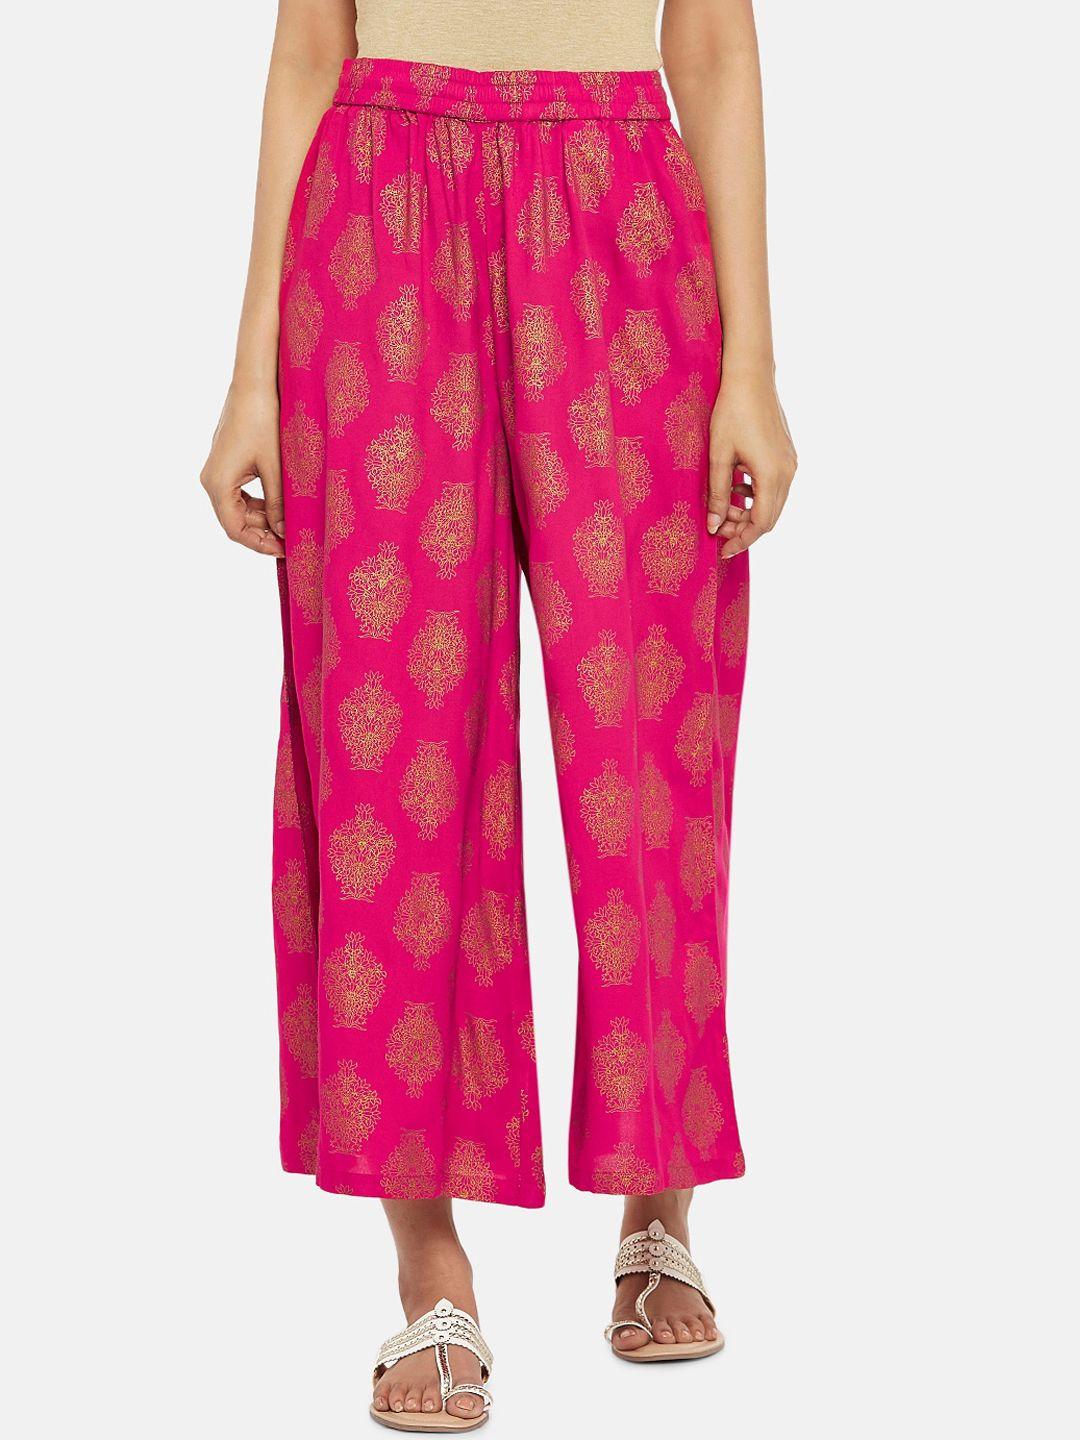 rangmanch by pantaloons women pink printed straight palazzos